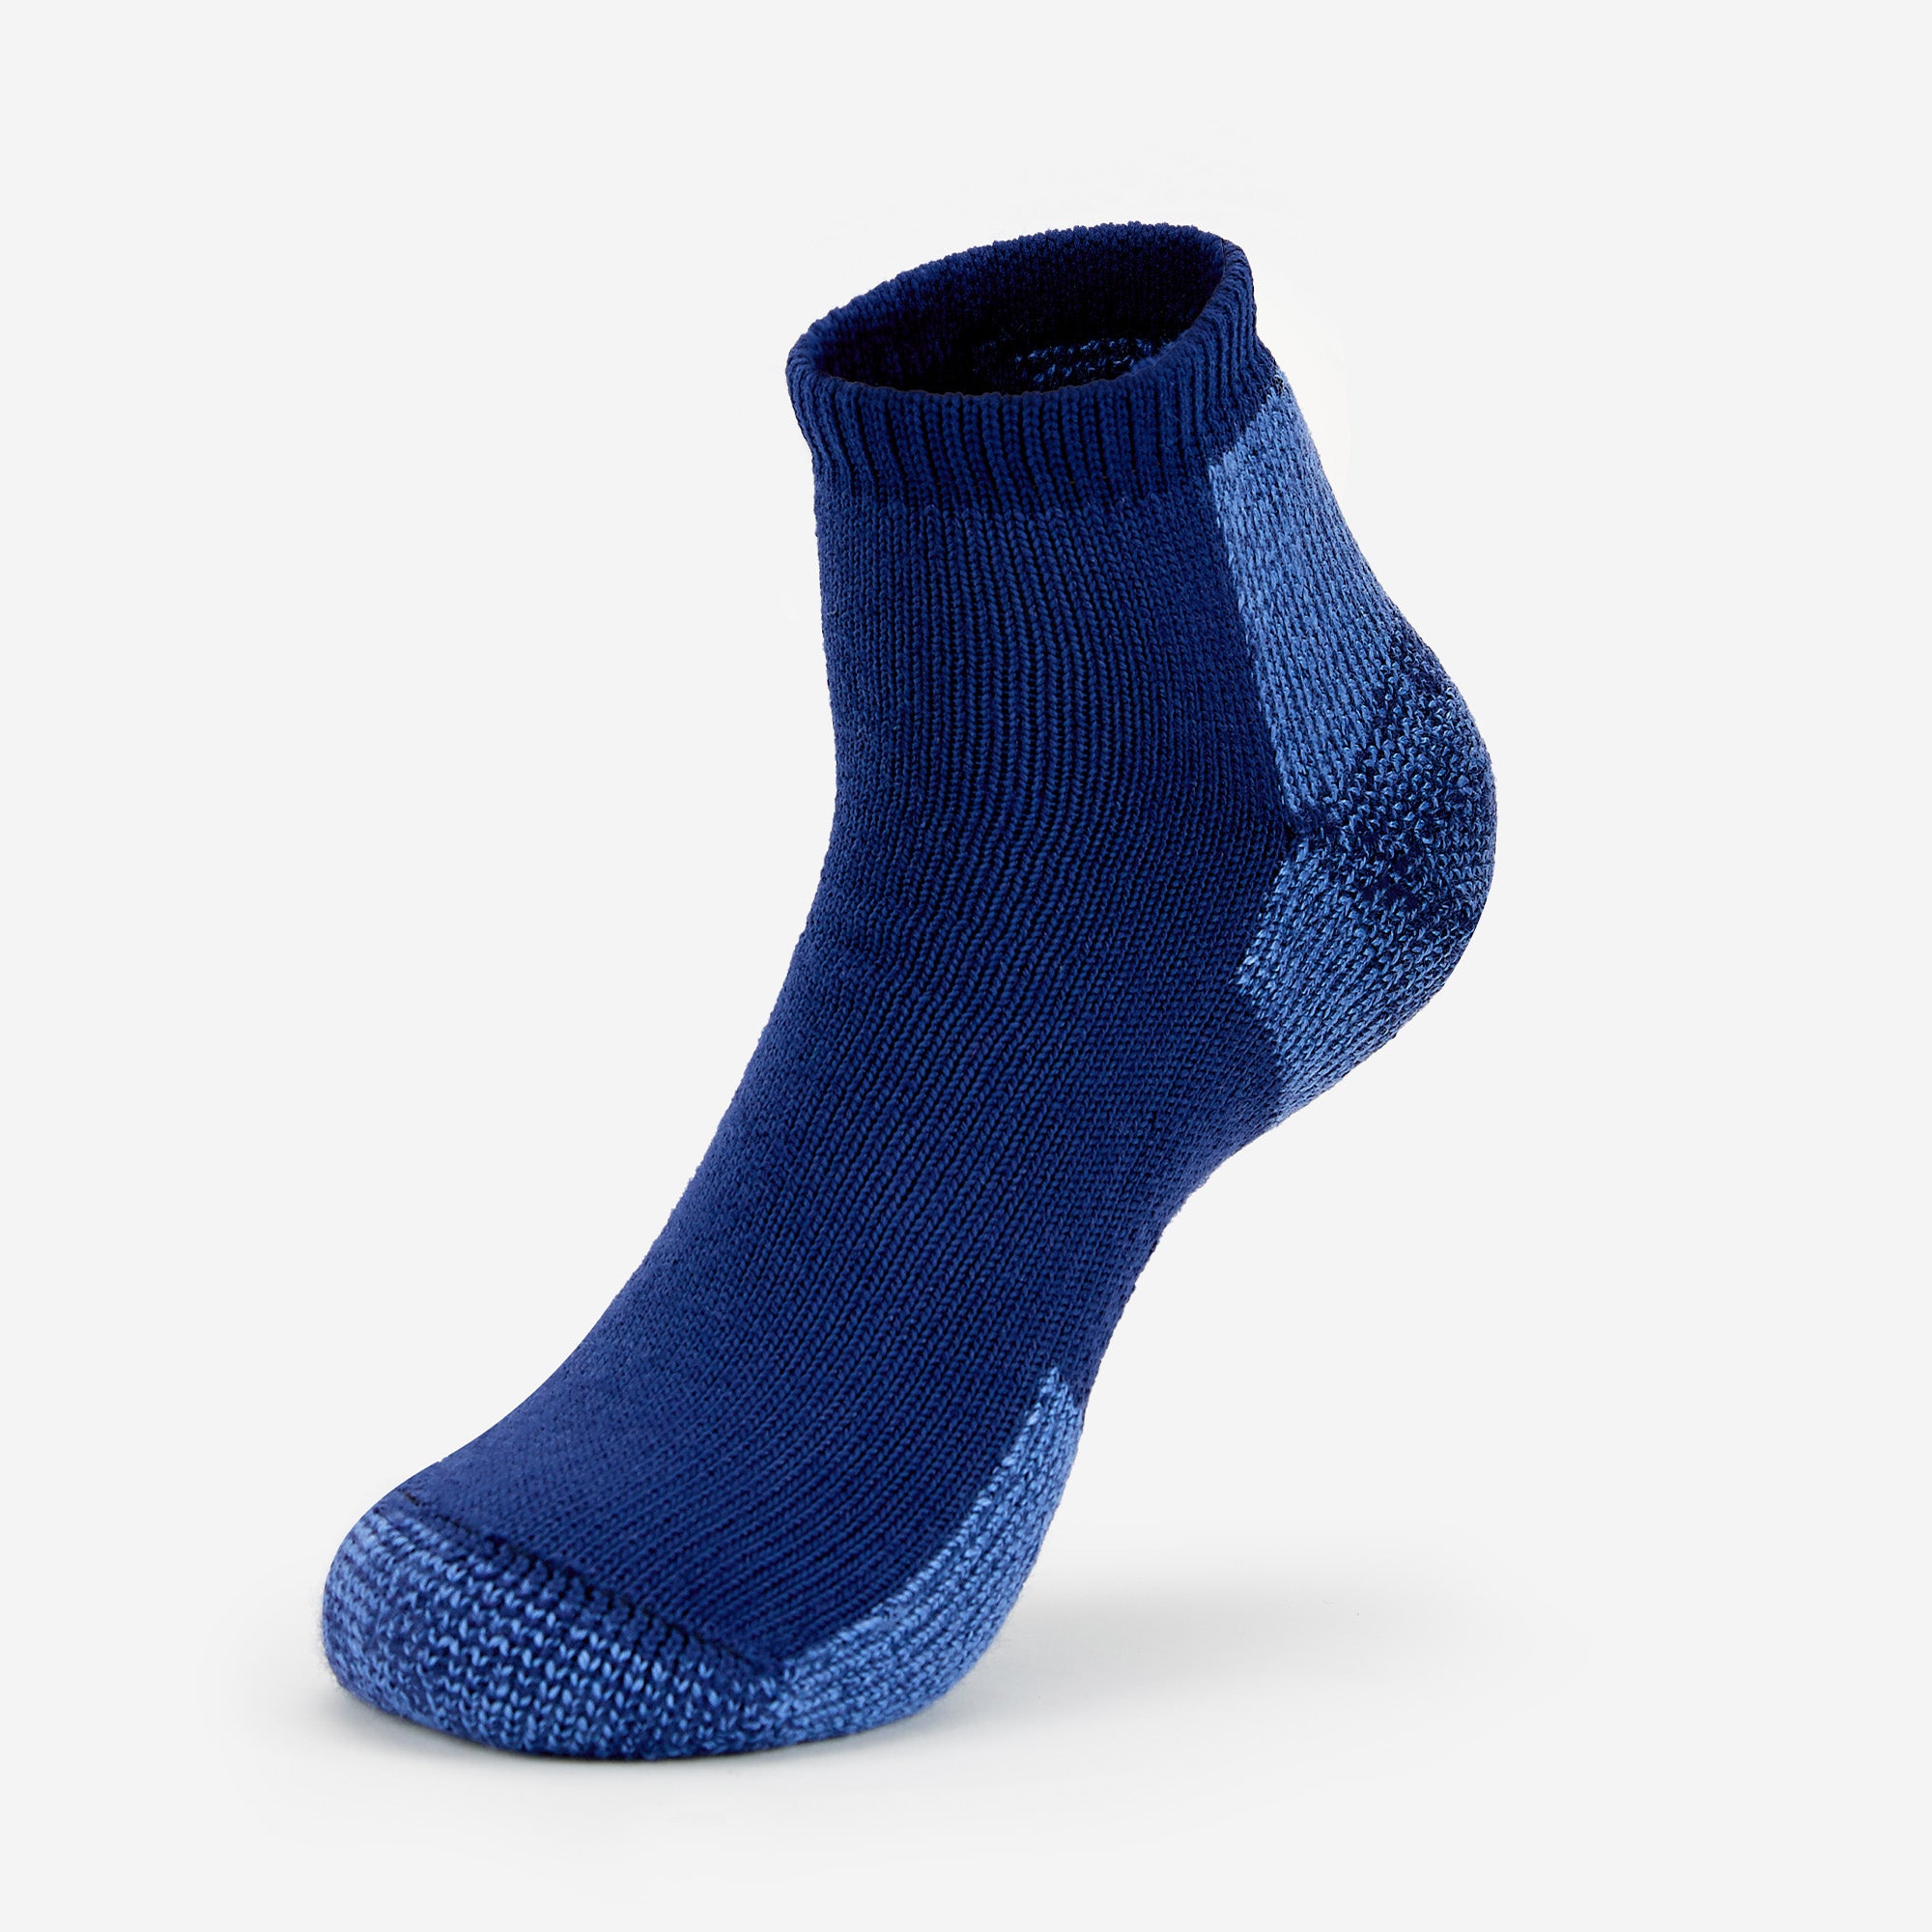 Maximum Cushion Low-Cut Running Socks – Thorlo